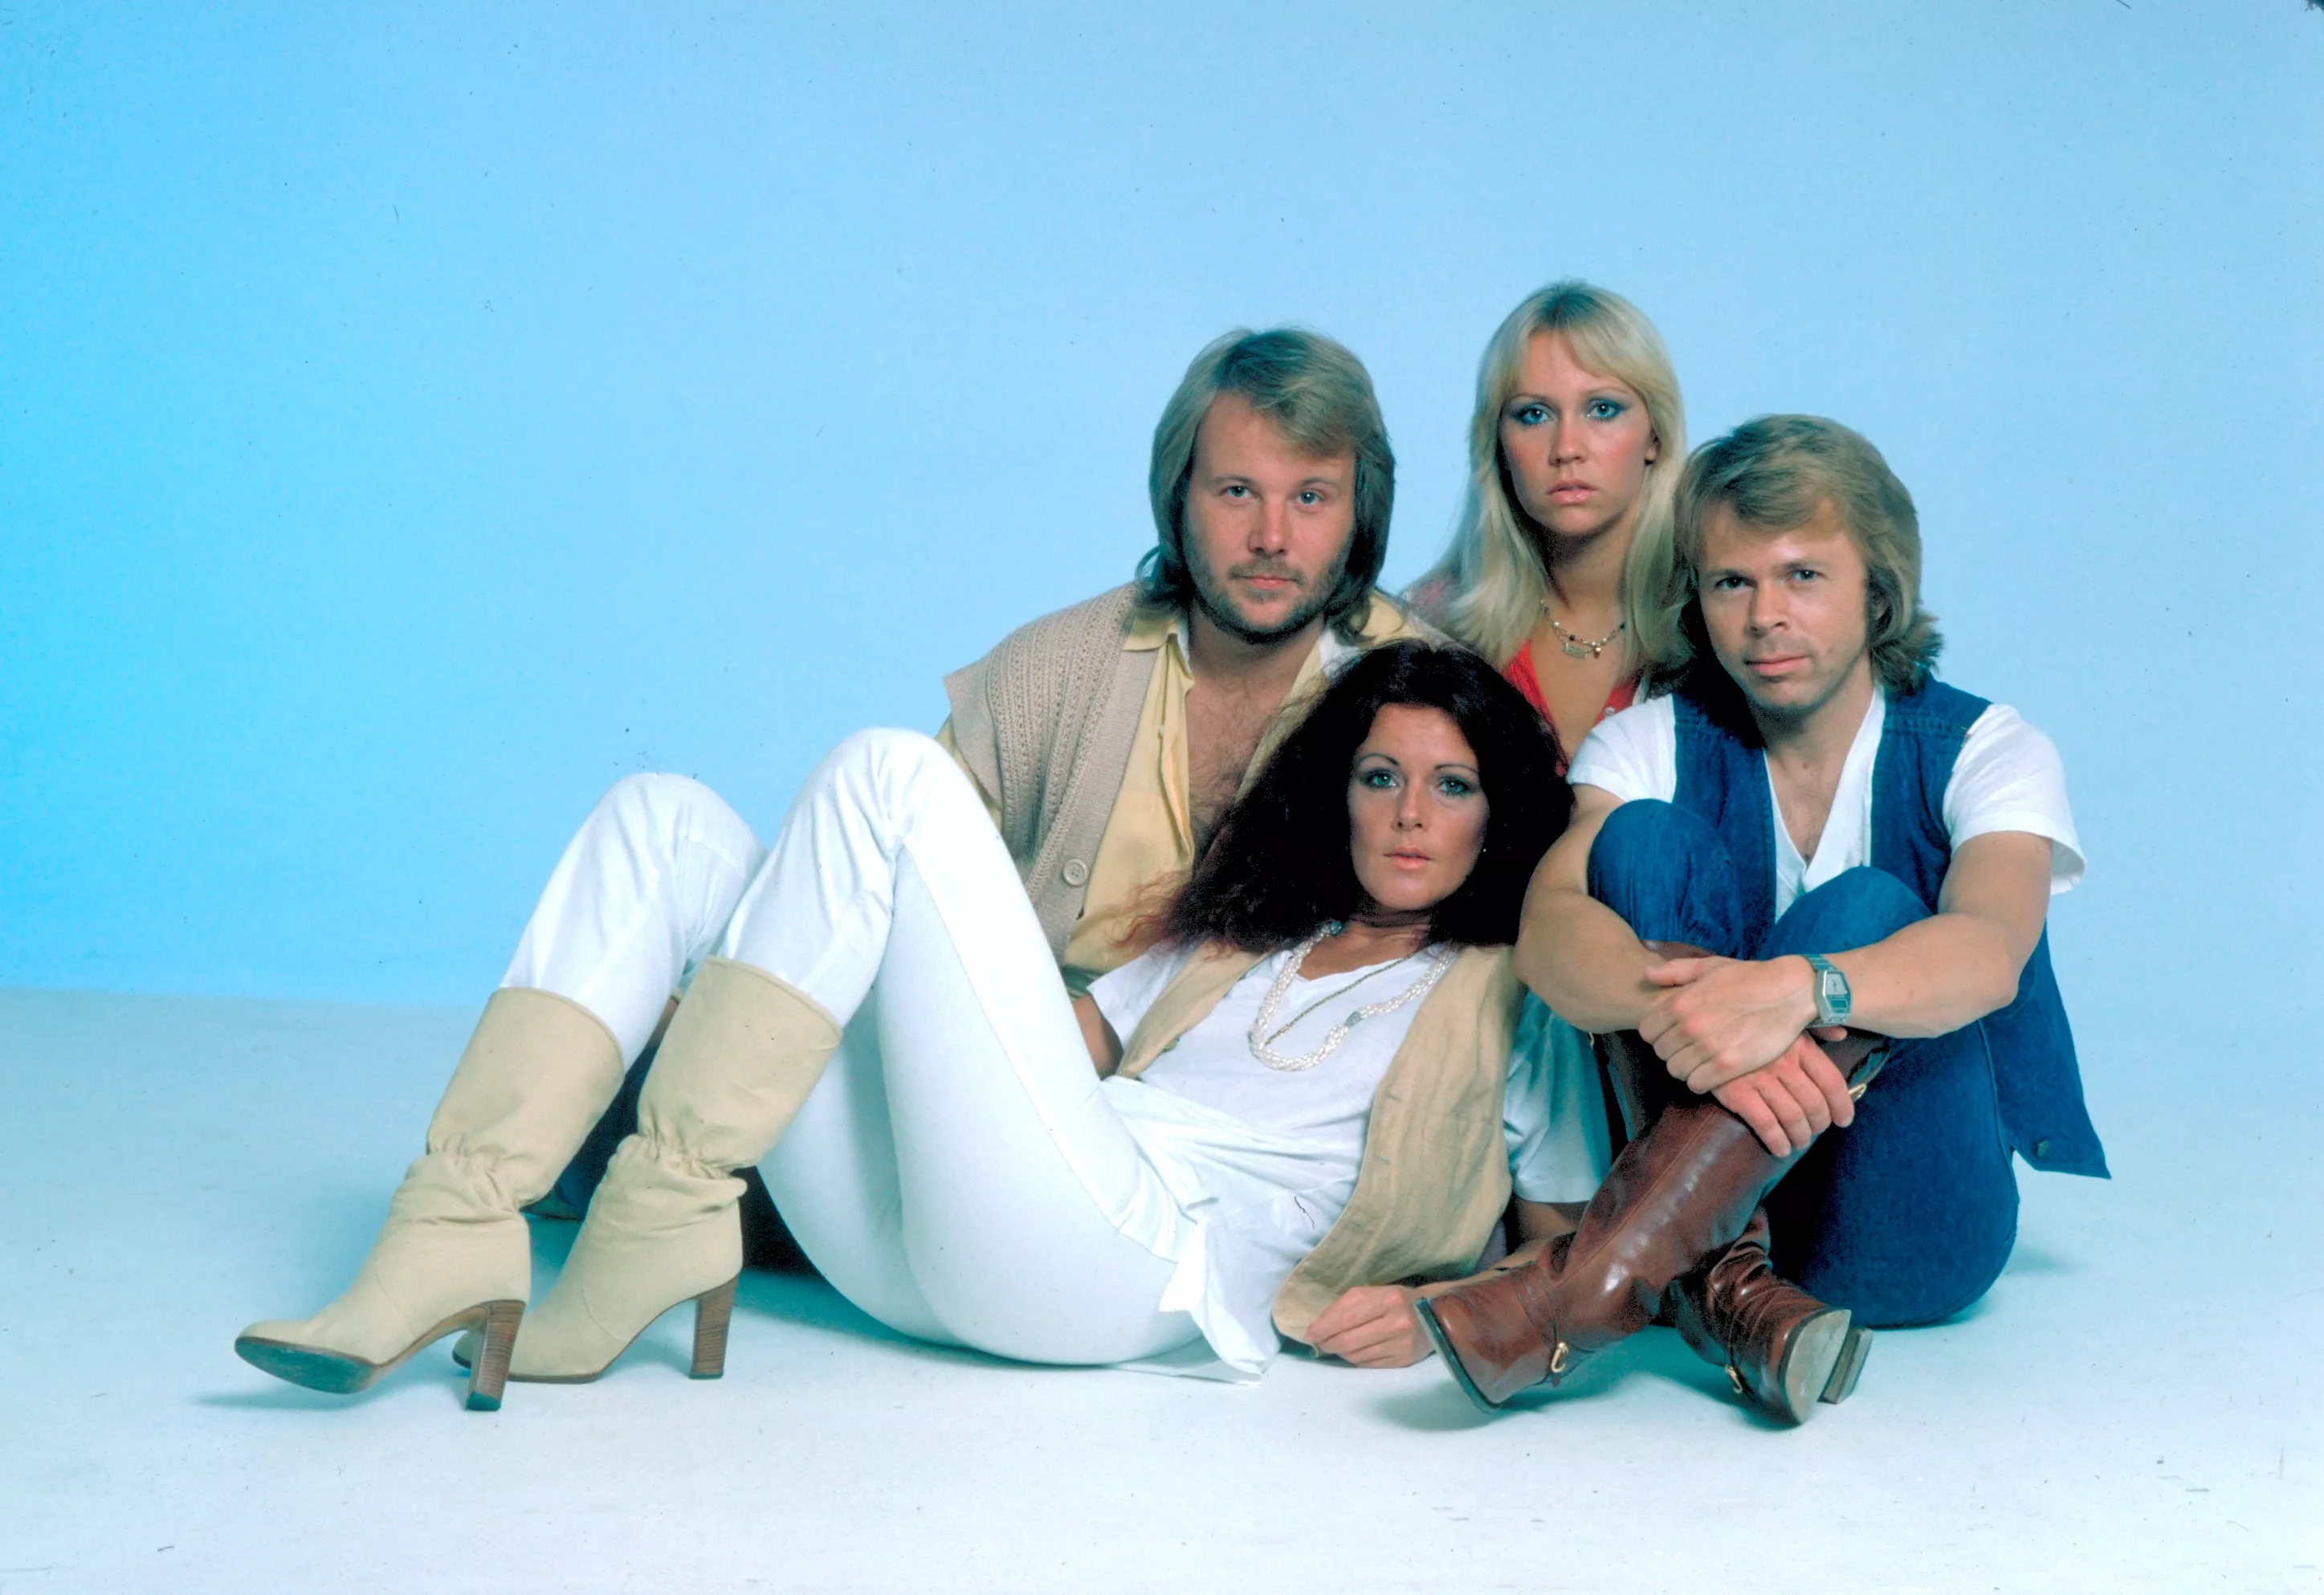 STORT, NYT ABBA-INTERVIEW: – Det var utroligt, hvor godt det føltes at blive genforenet